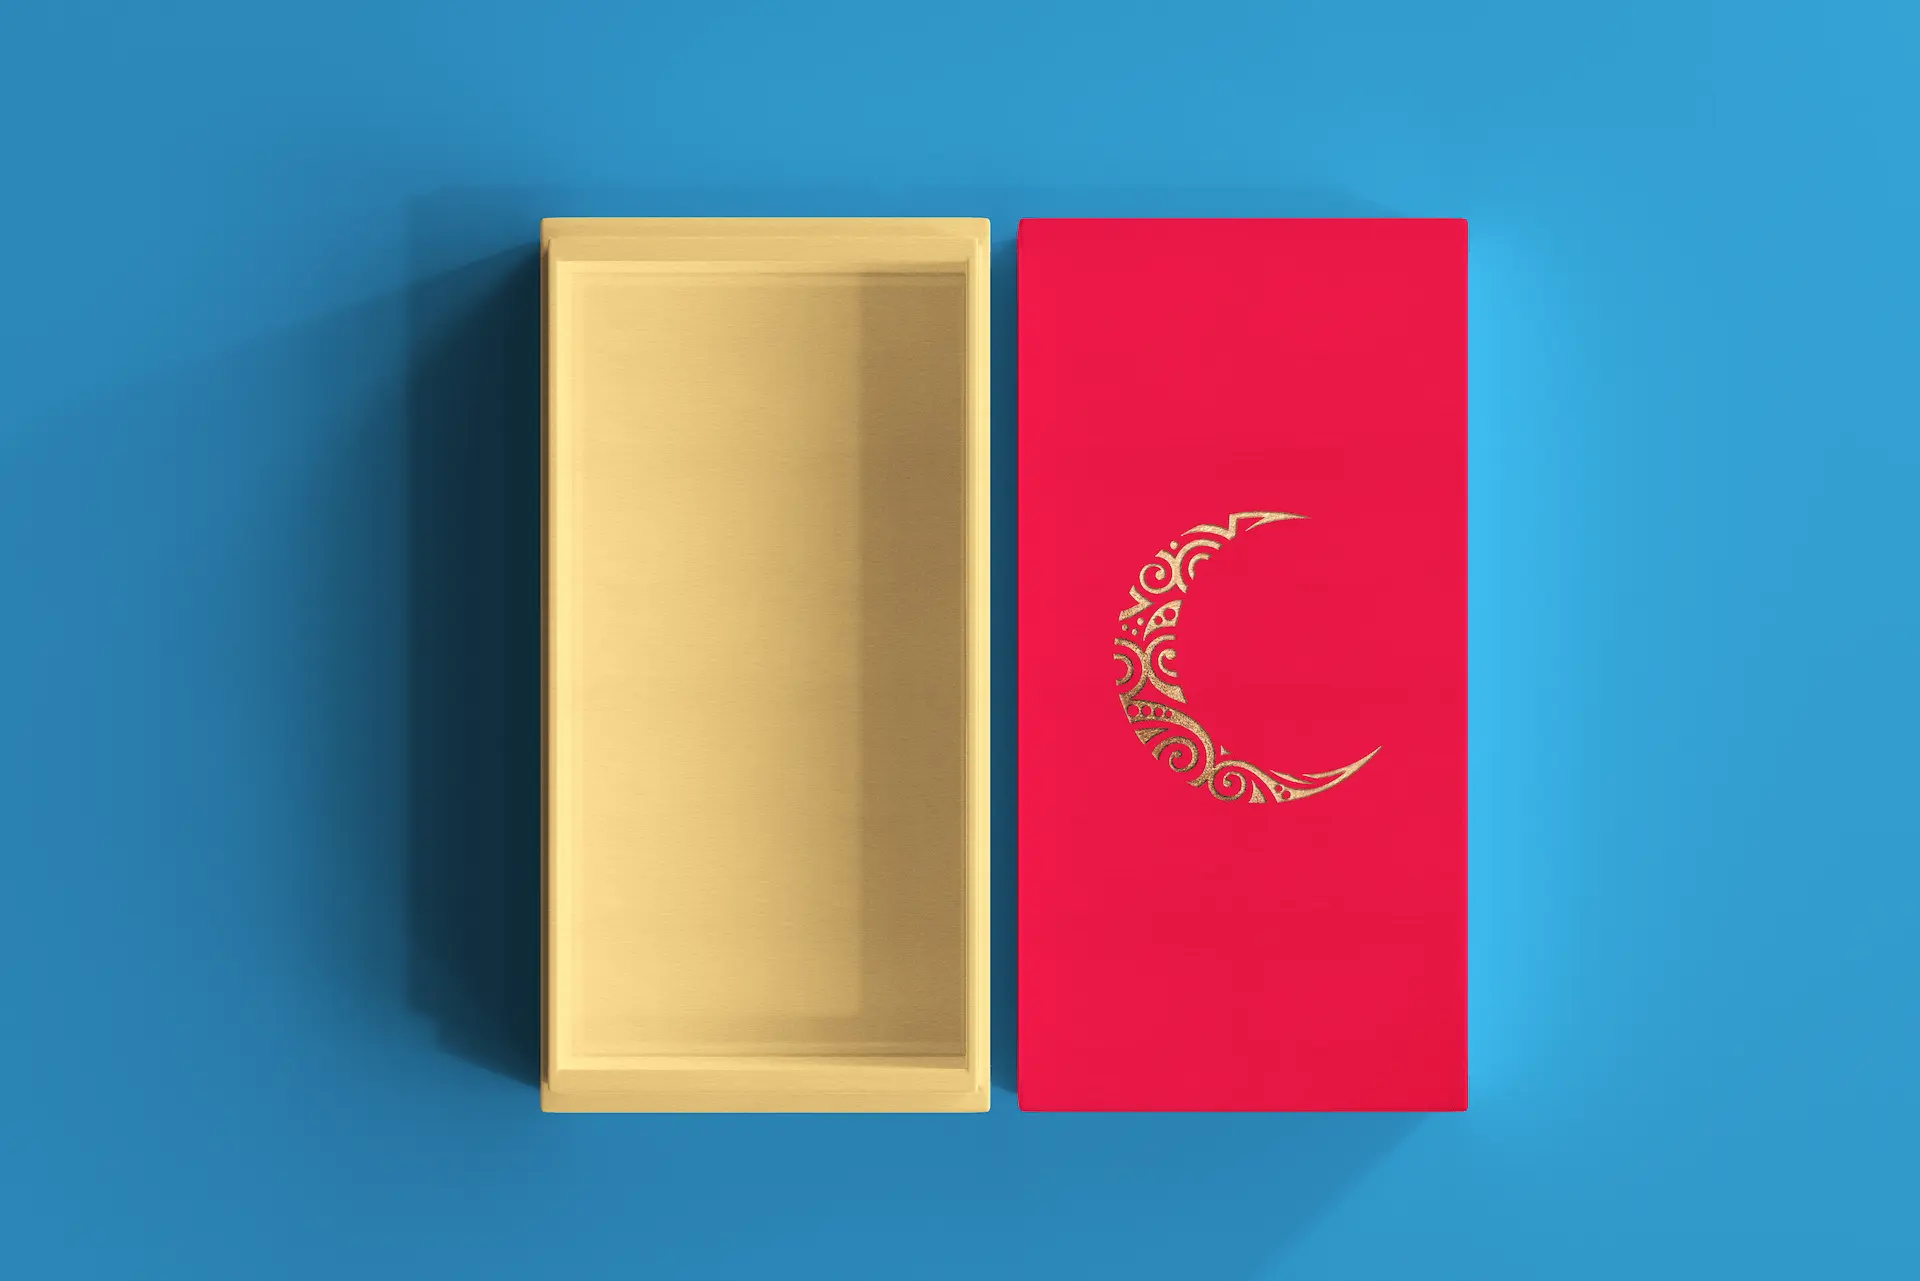 caja rectangular abierta mostrando el interior corporativa con logotipo en stamping dorado colores azul y rojo sobre fondo azul de Coralisha